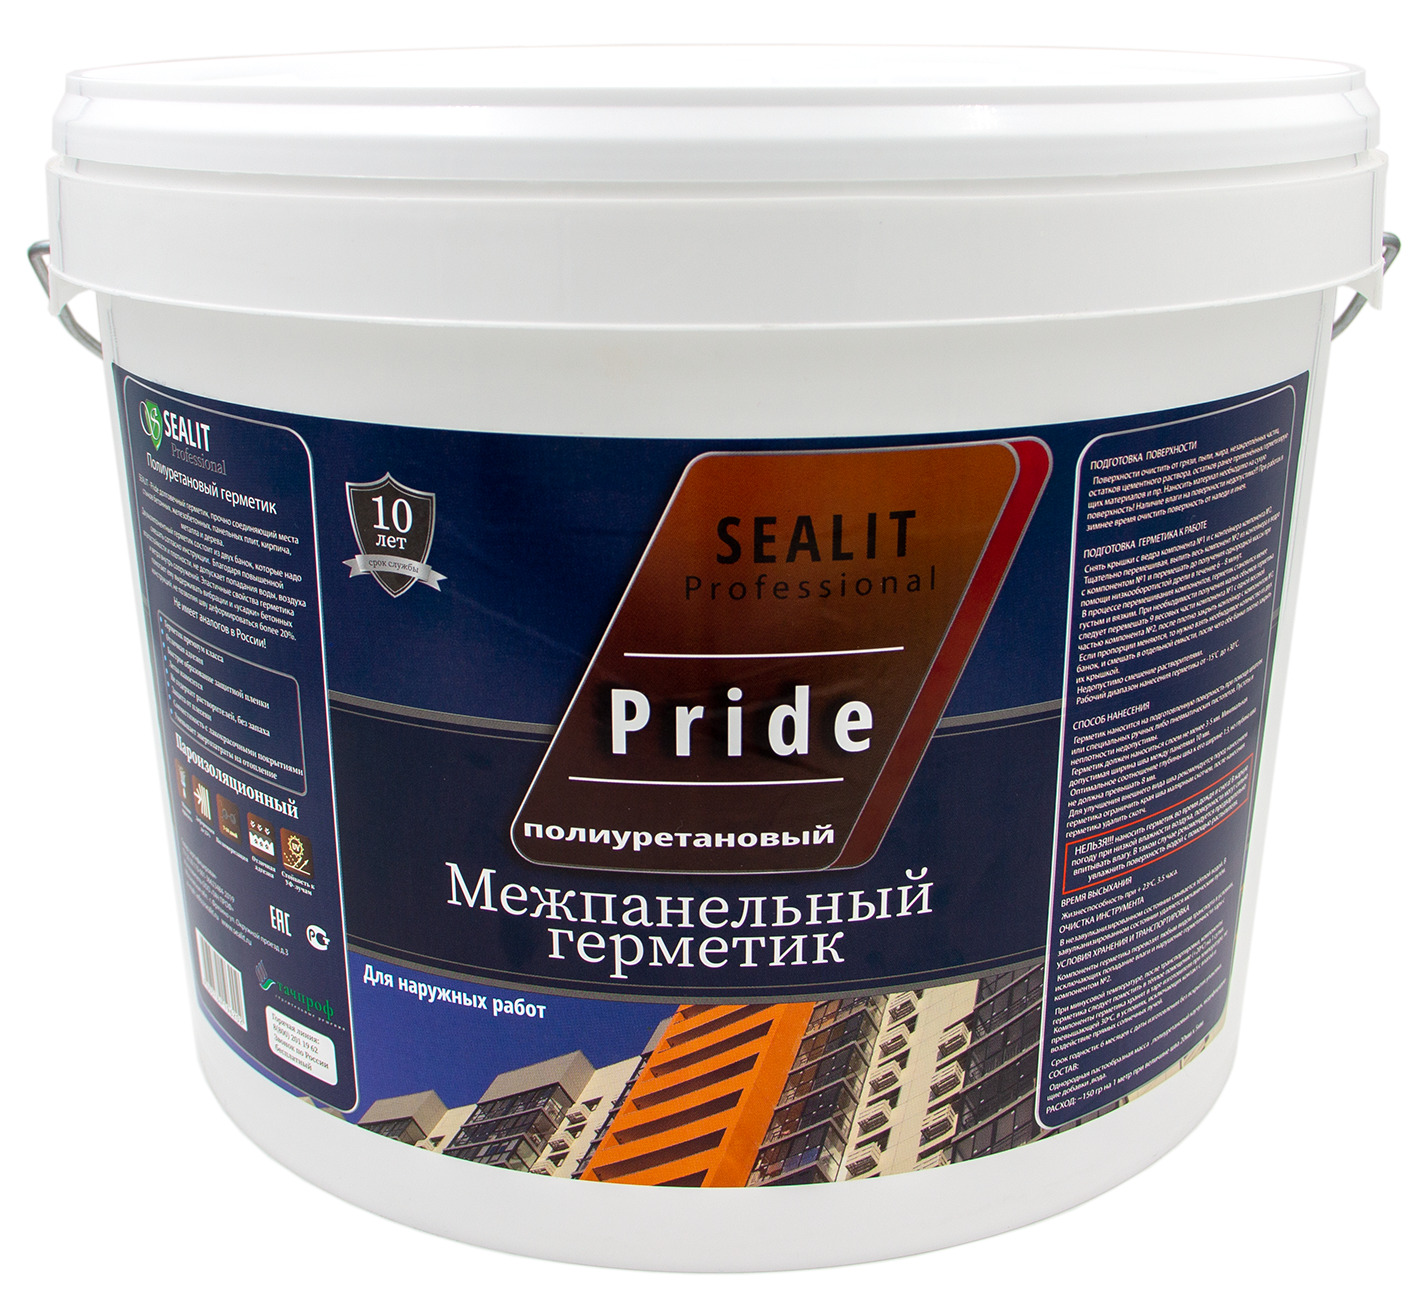 Двухкомпонентный герметик для межпанельных швов Sealit Pride 12,5 кг, серый двухкомпонентный герметик для межпанельных швов sealit pride 12 5 кг серый